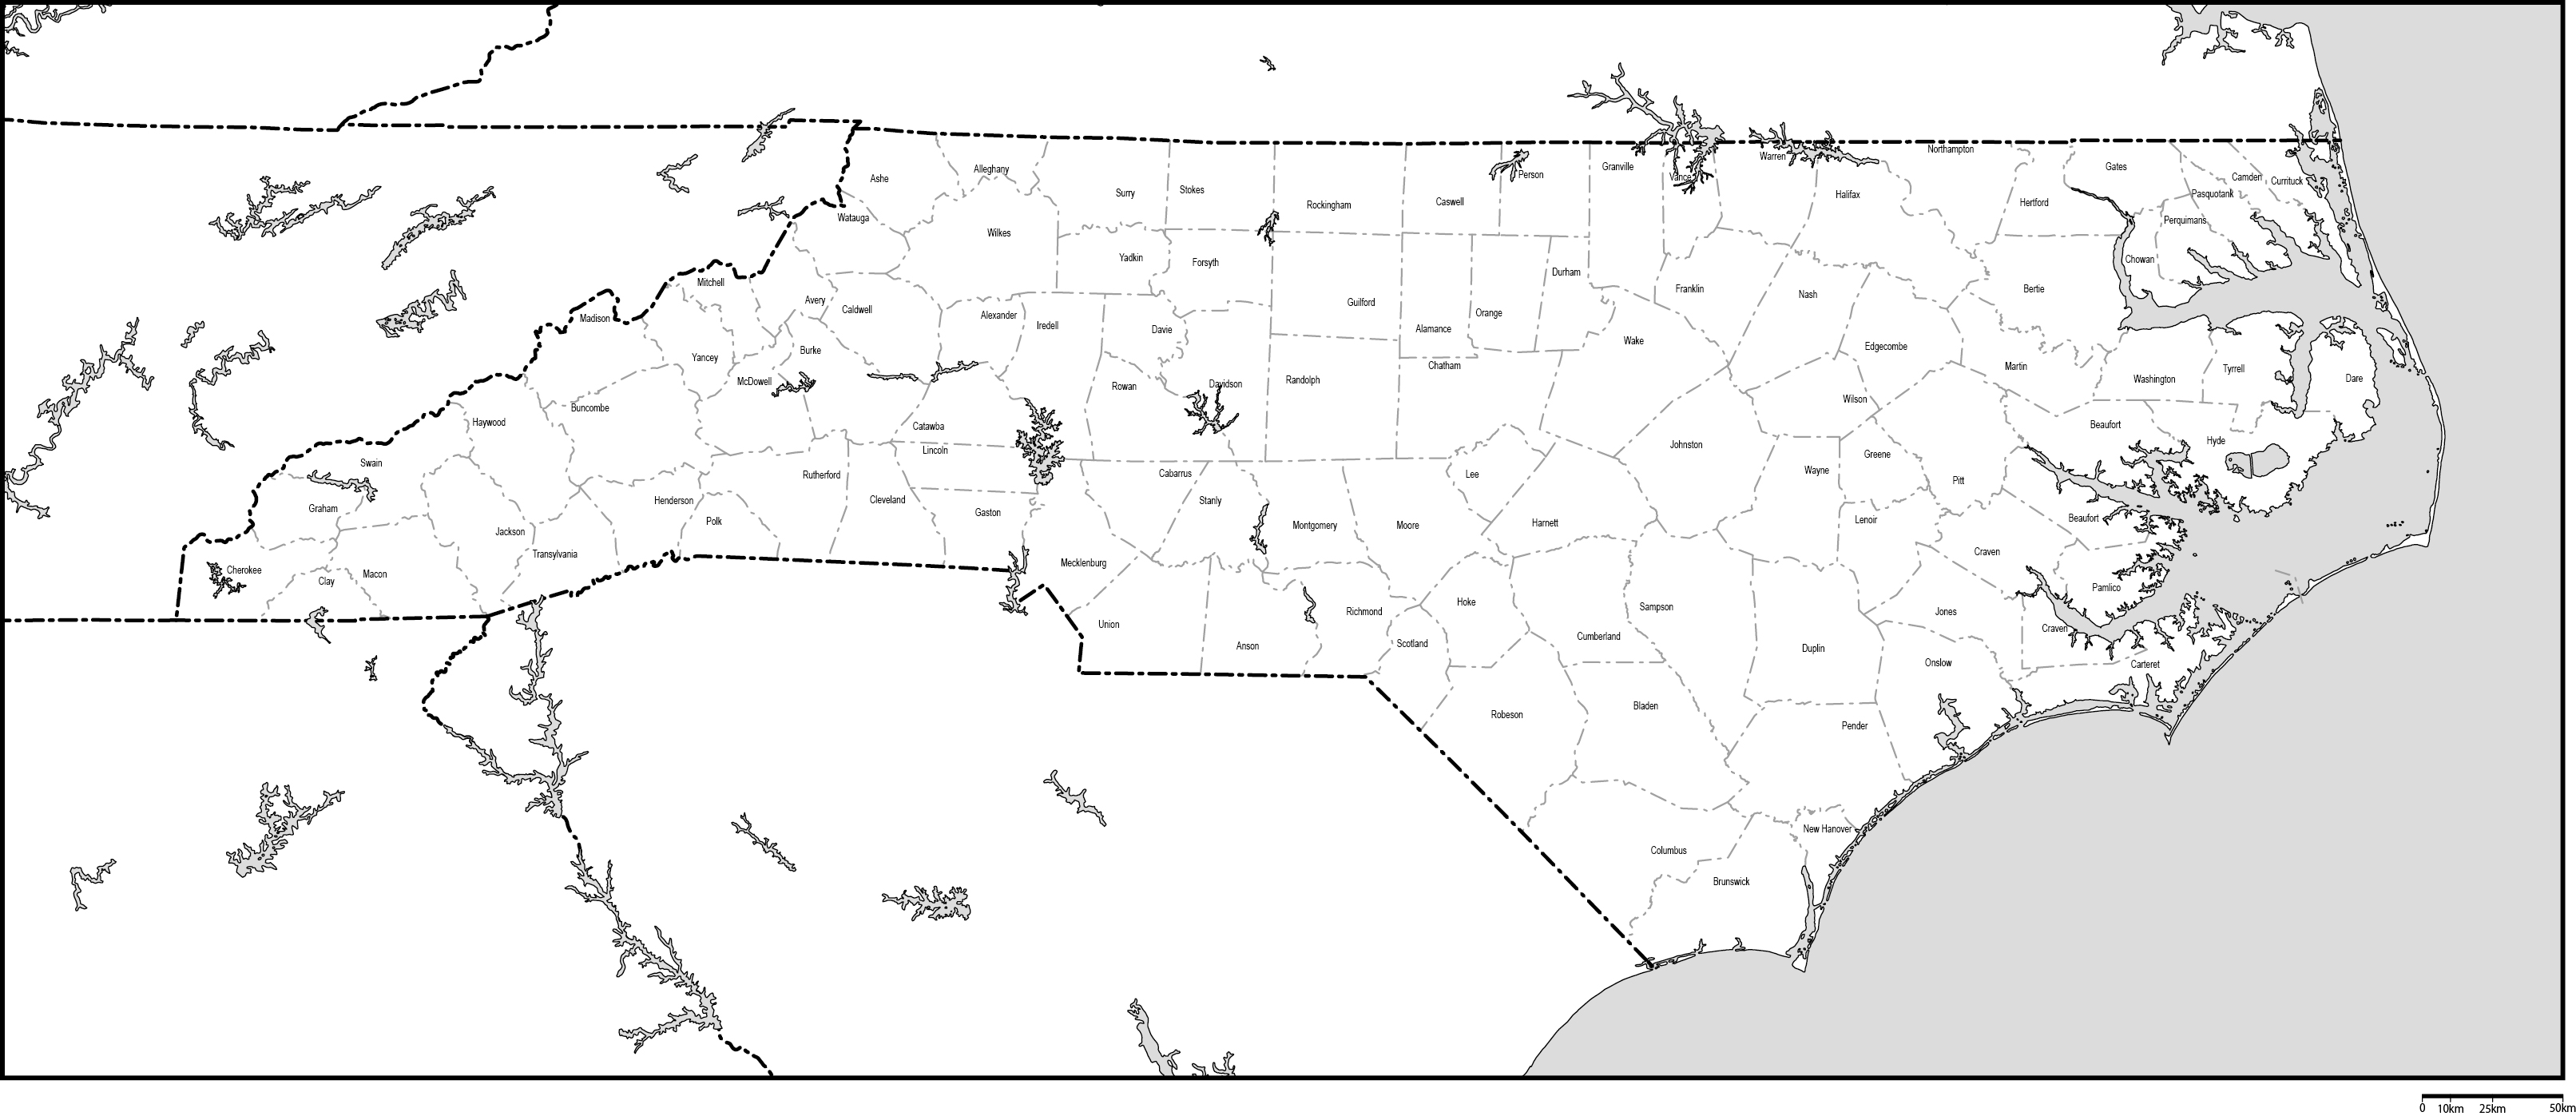 ノースカロライナ州郡分け白地図郡名あり(英語)フリーデータの画像